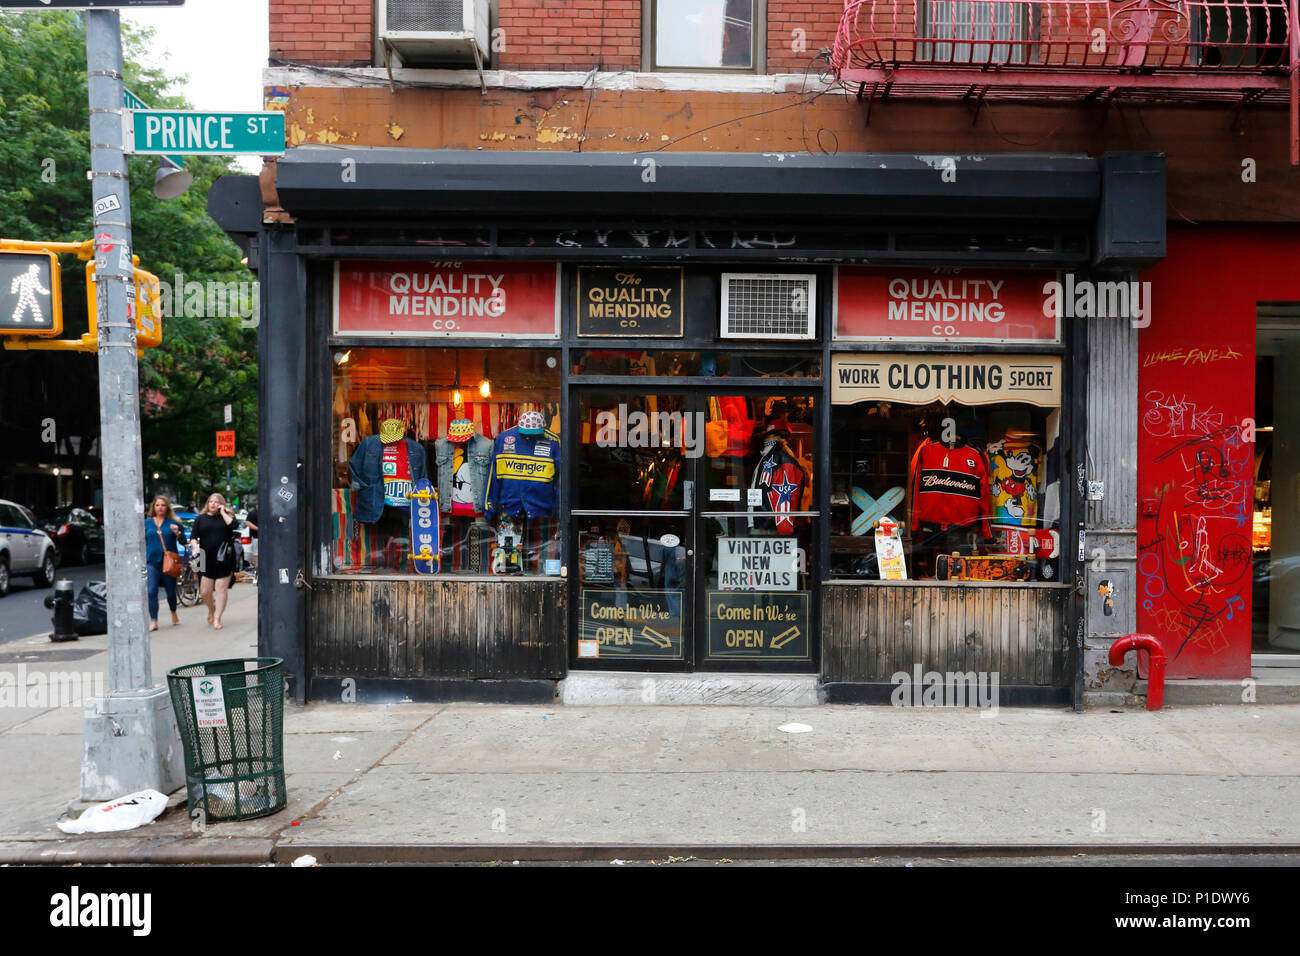 La qualità rammendo Co, 15 Prince St, New York, NY. esterno alla vetrina di un negozio di abbigliamento nel quartiere Nolita di Manhattan. Foto Stock